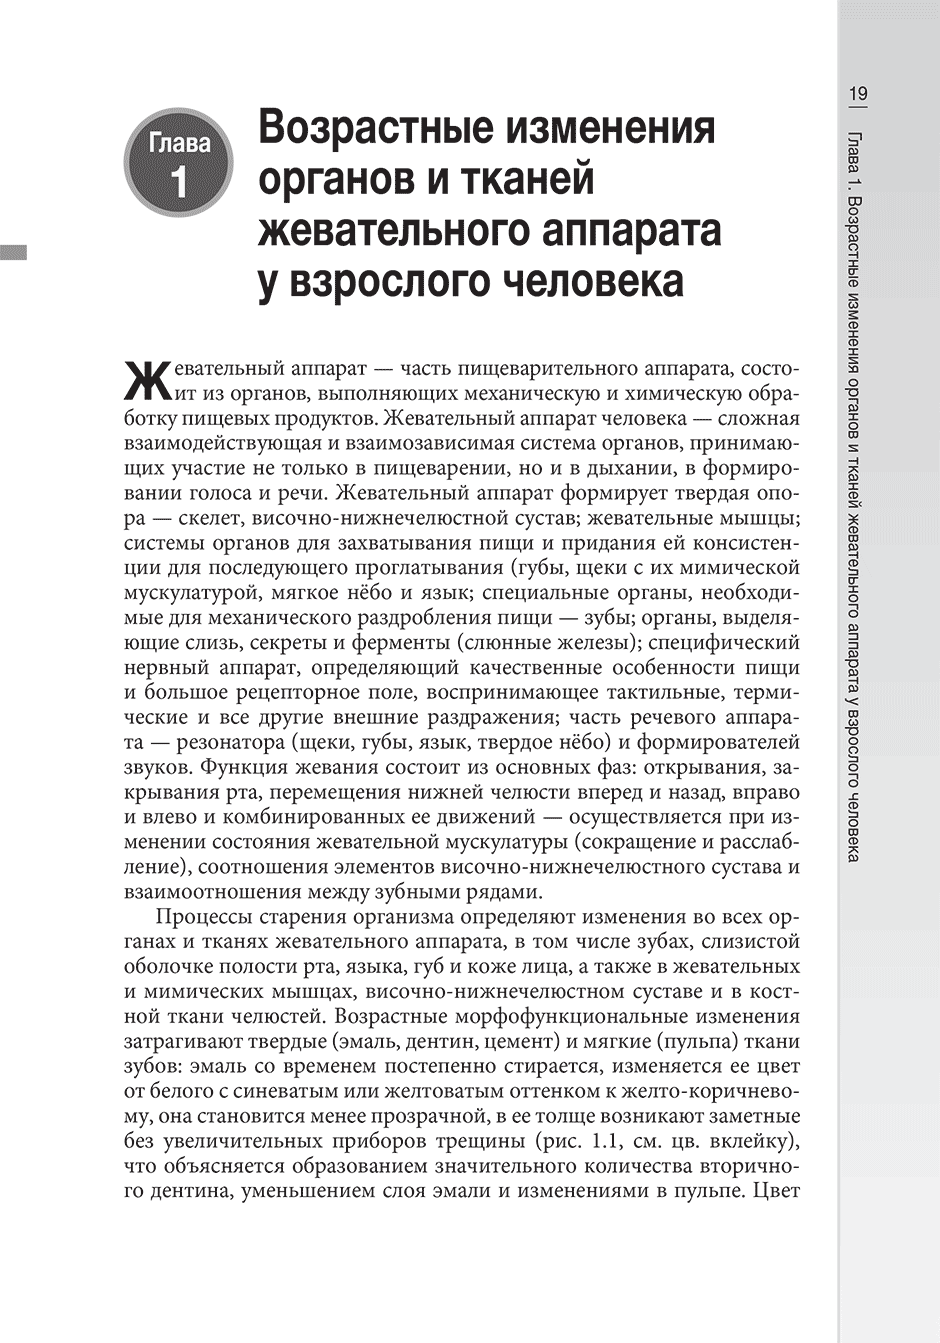 Пример страницы из книги "Гериатрическая гастроэнтерология: руководство для врачей" - Хорошинина Л. П.